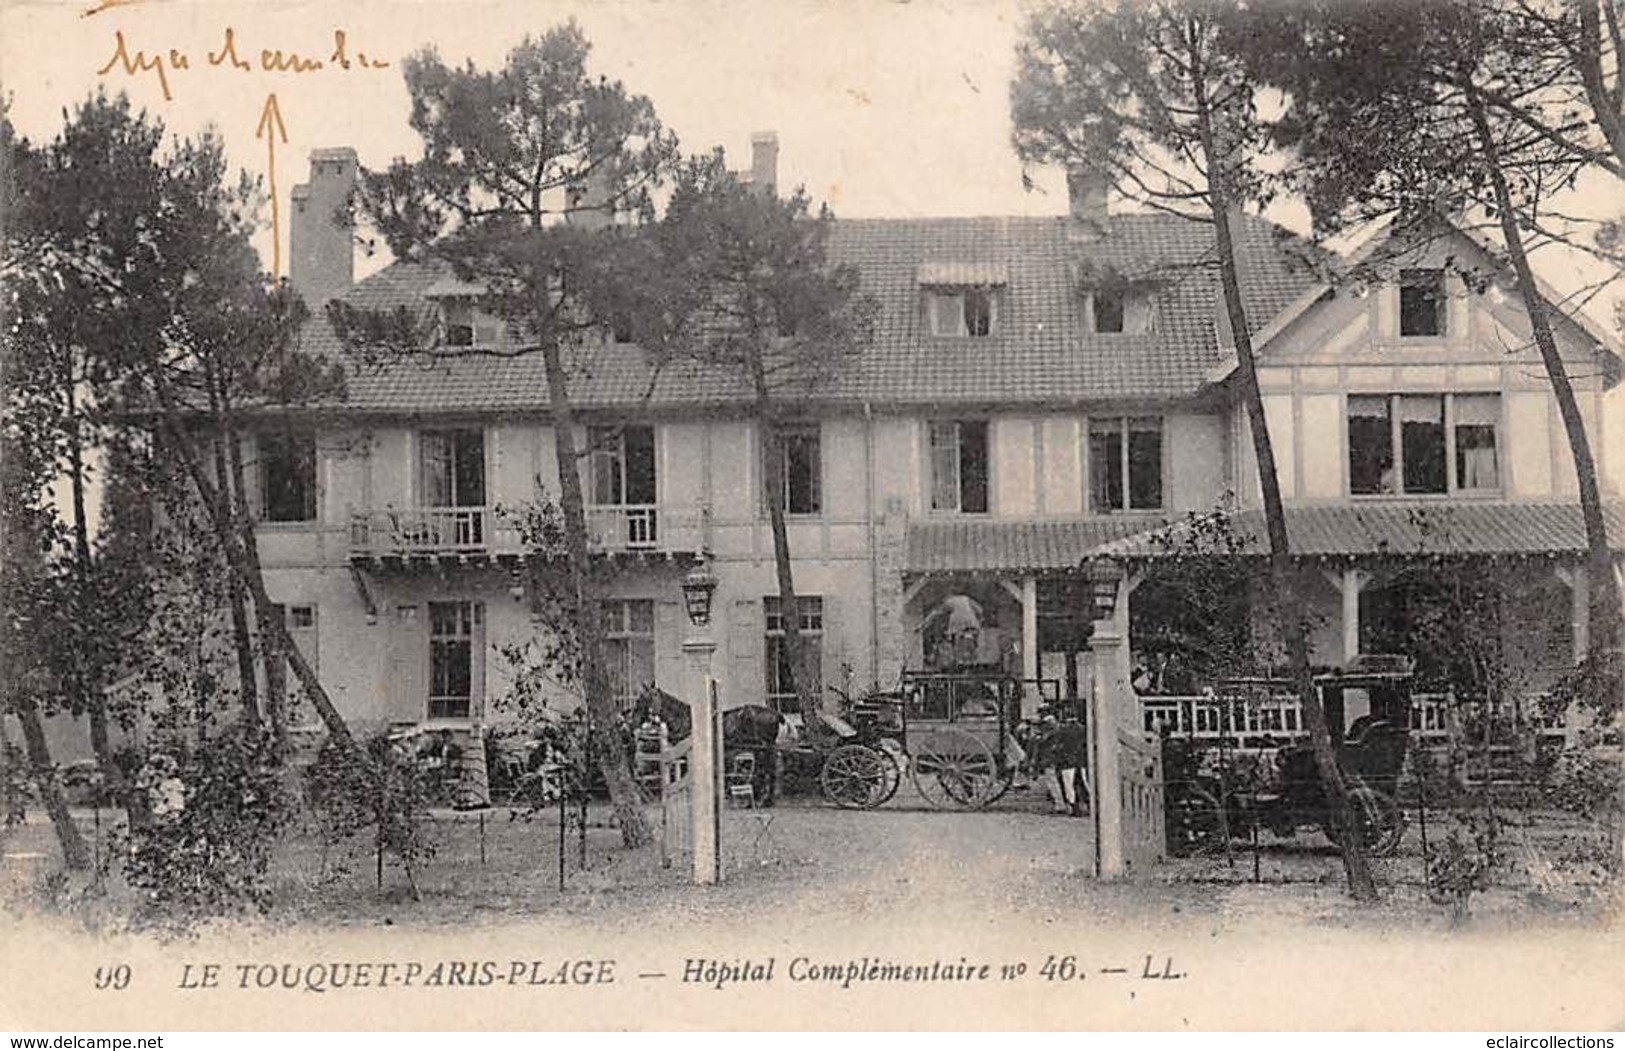 Le Touquet . Paris-Plage   62    Lot de 14 cartes dont:    Rues, Tramway,Hôtel,Casino     (voir scan)